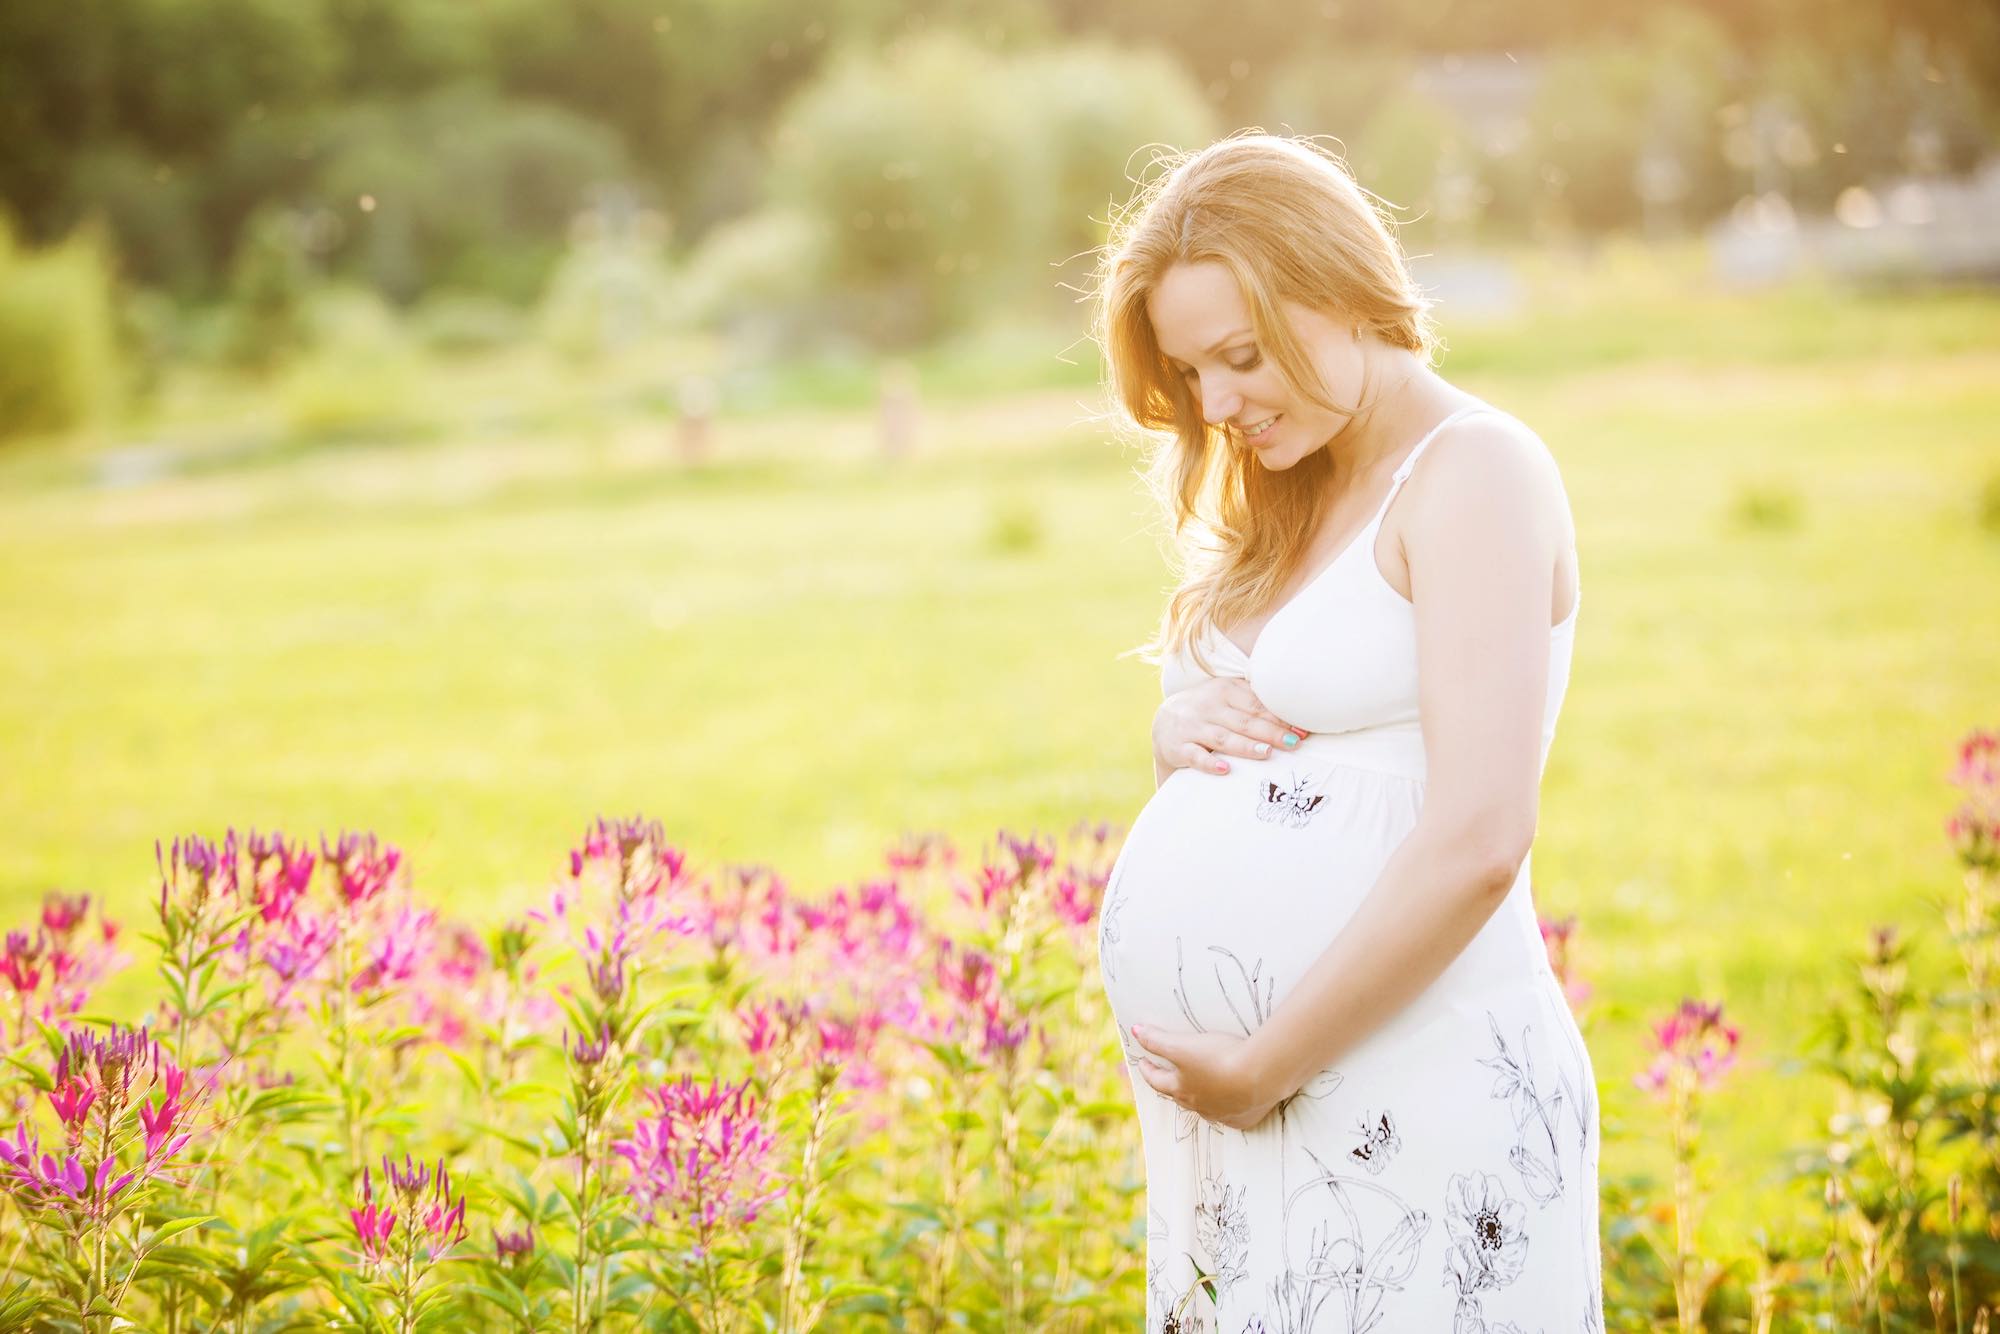 Chuẩn bị bước sang giai đoạn cuối thai kỳ, tử cung của mẹ lớn và nặng thêm. 